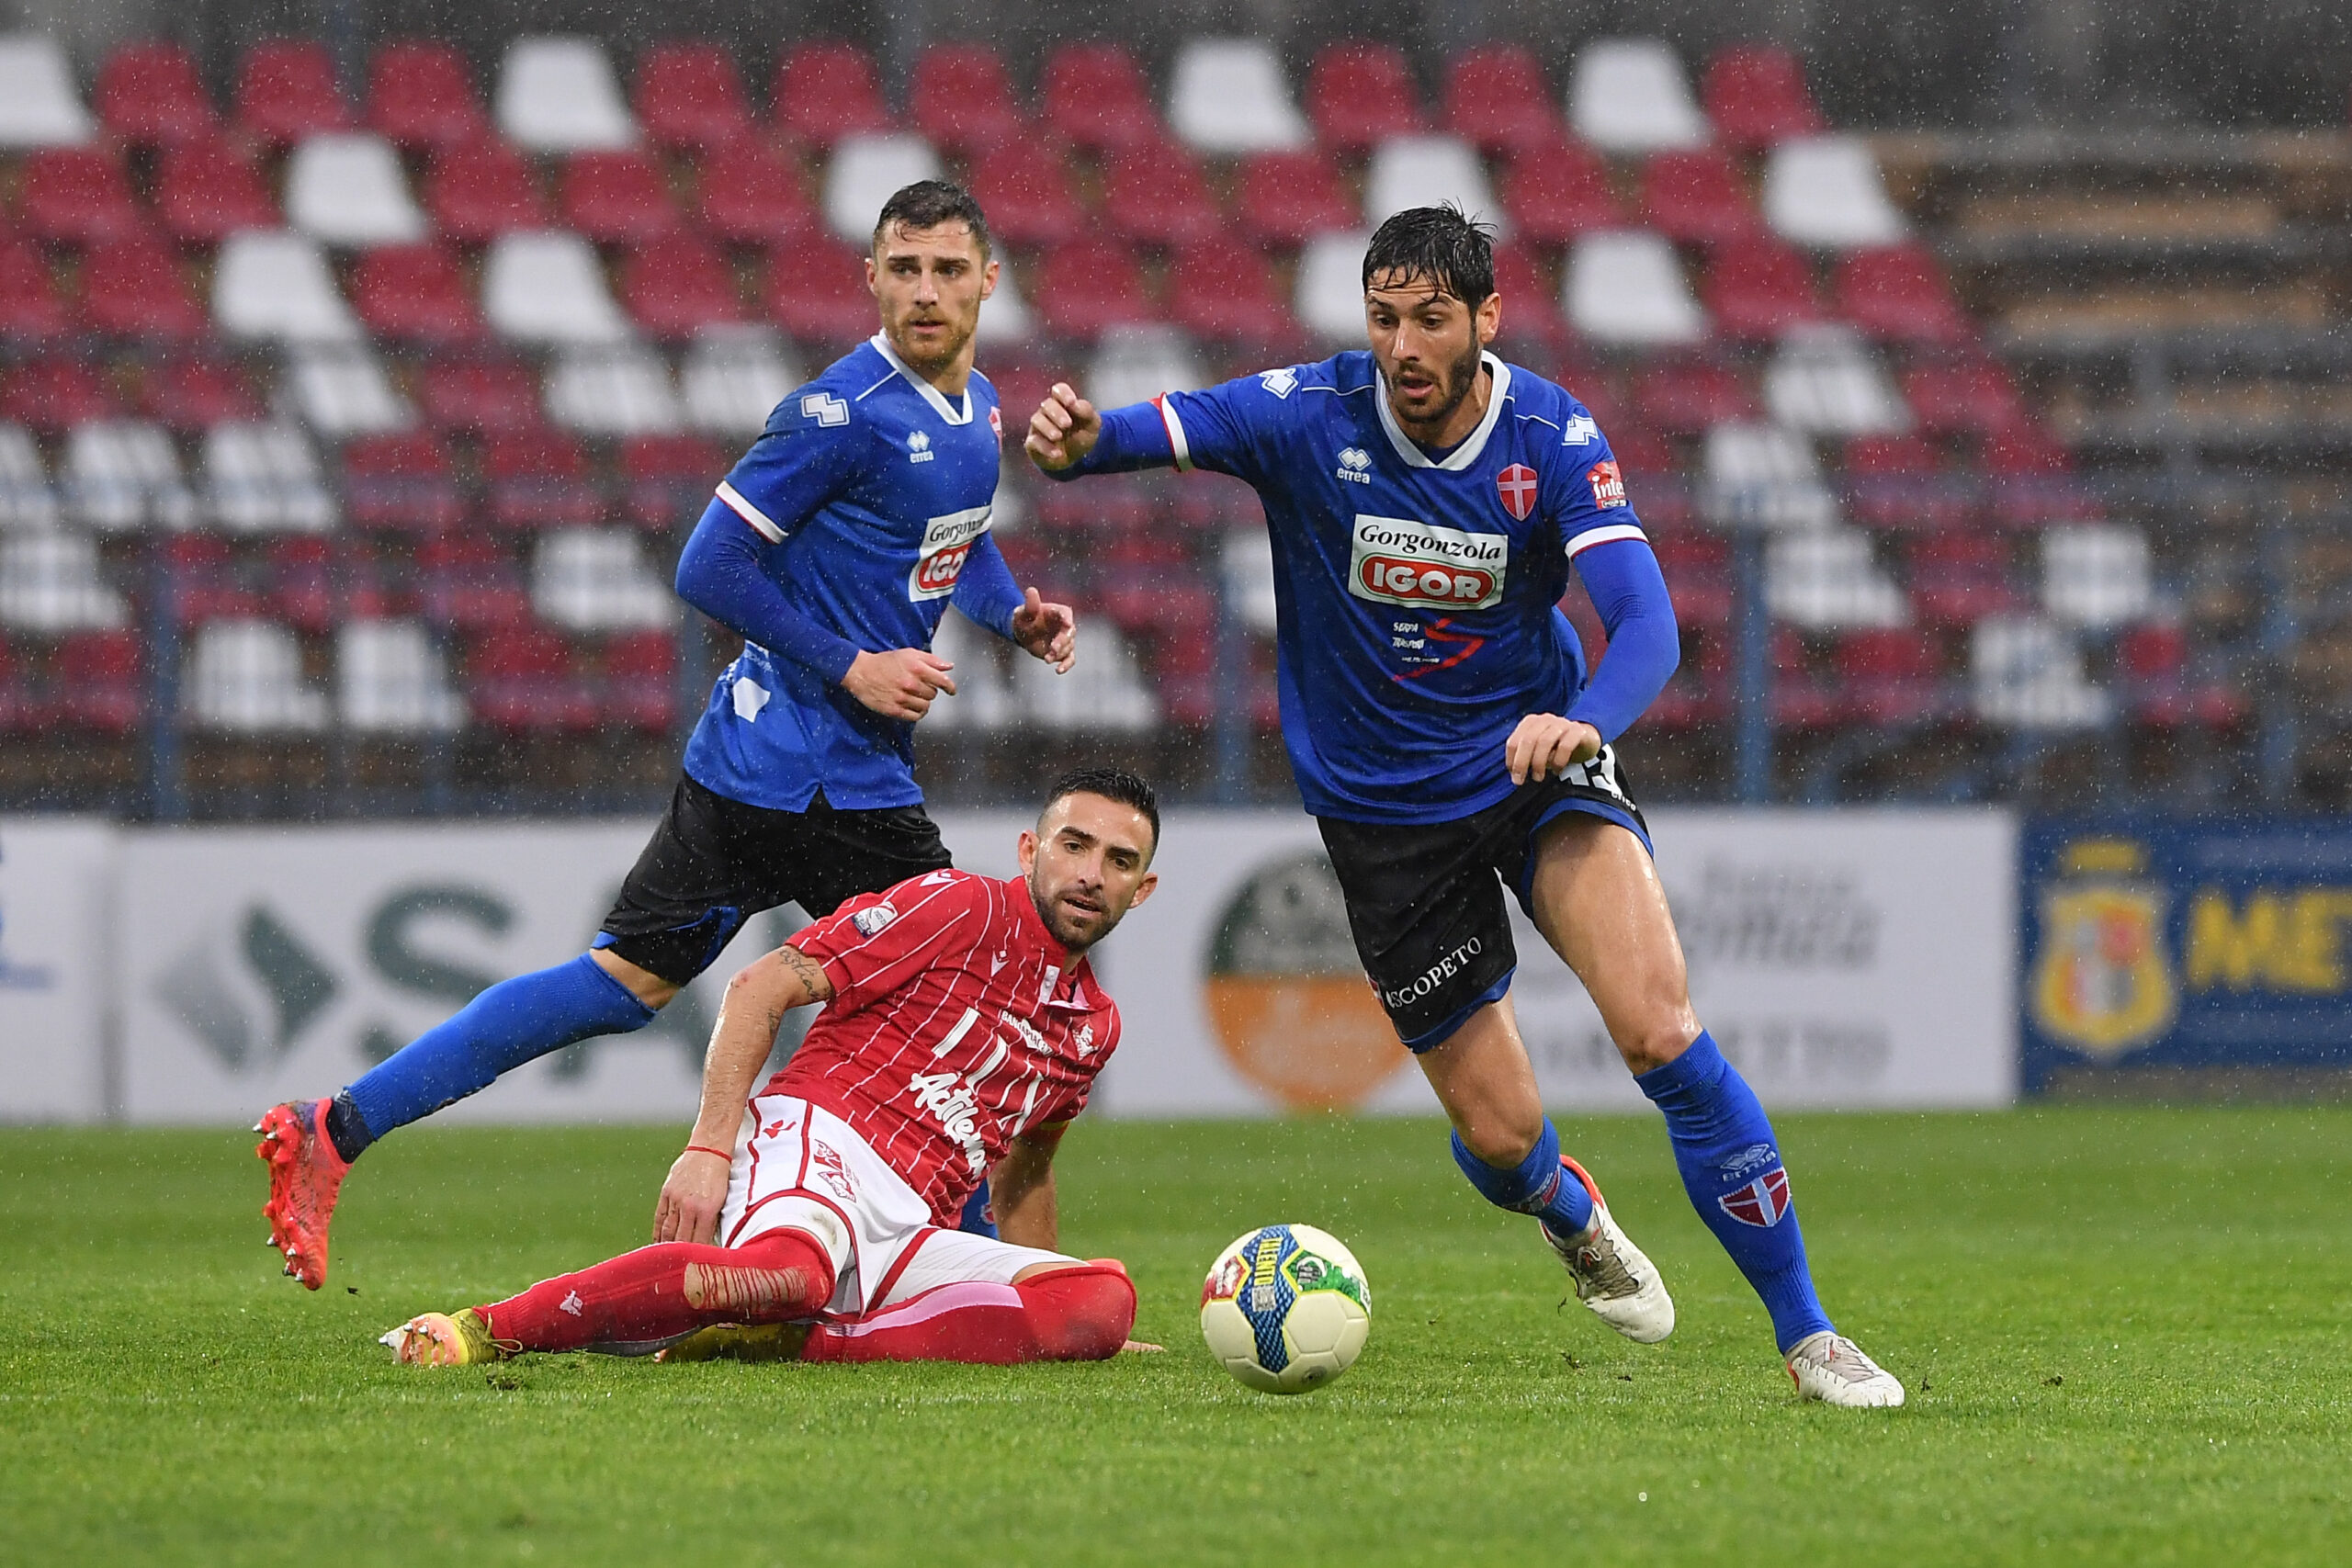 Read more about the article Piacenza-Novara 1-1 | Il tabellino del match